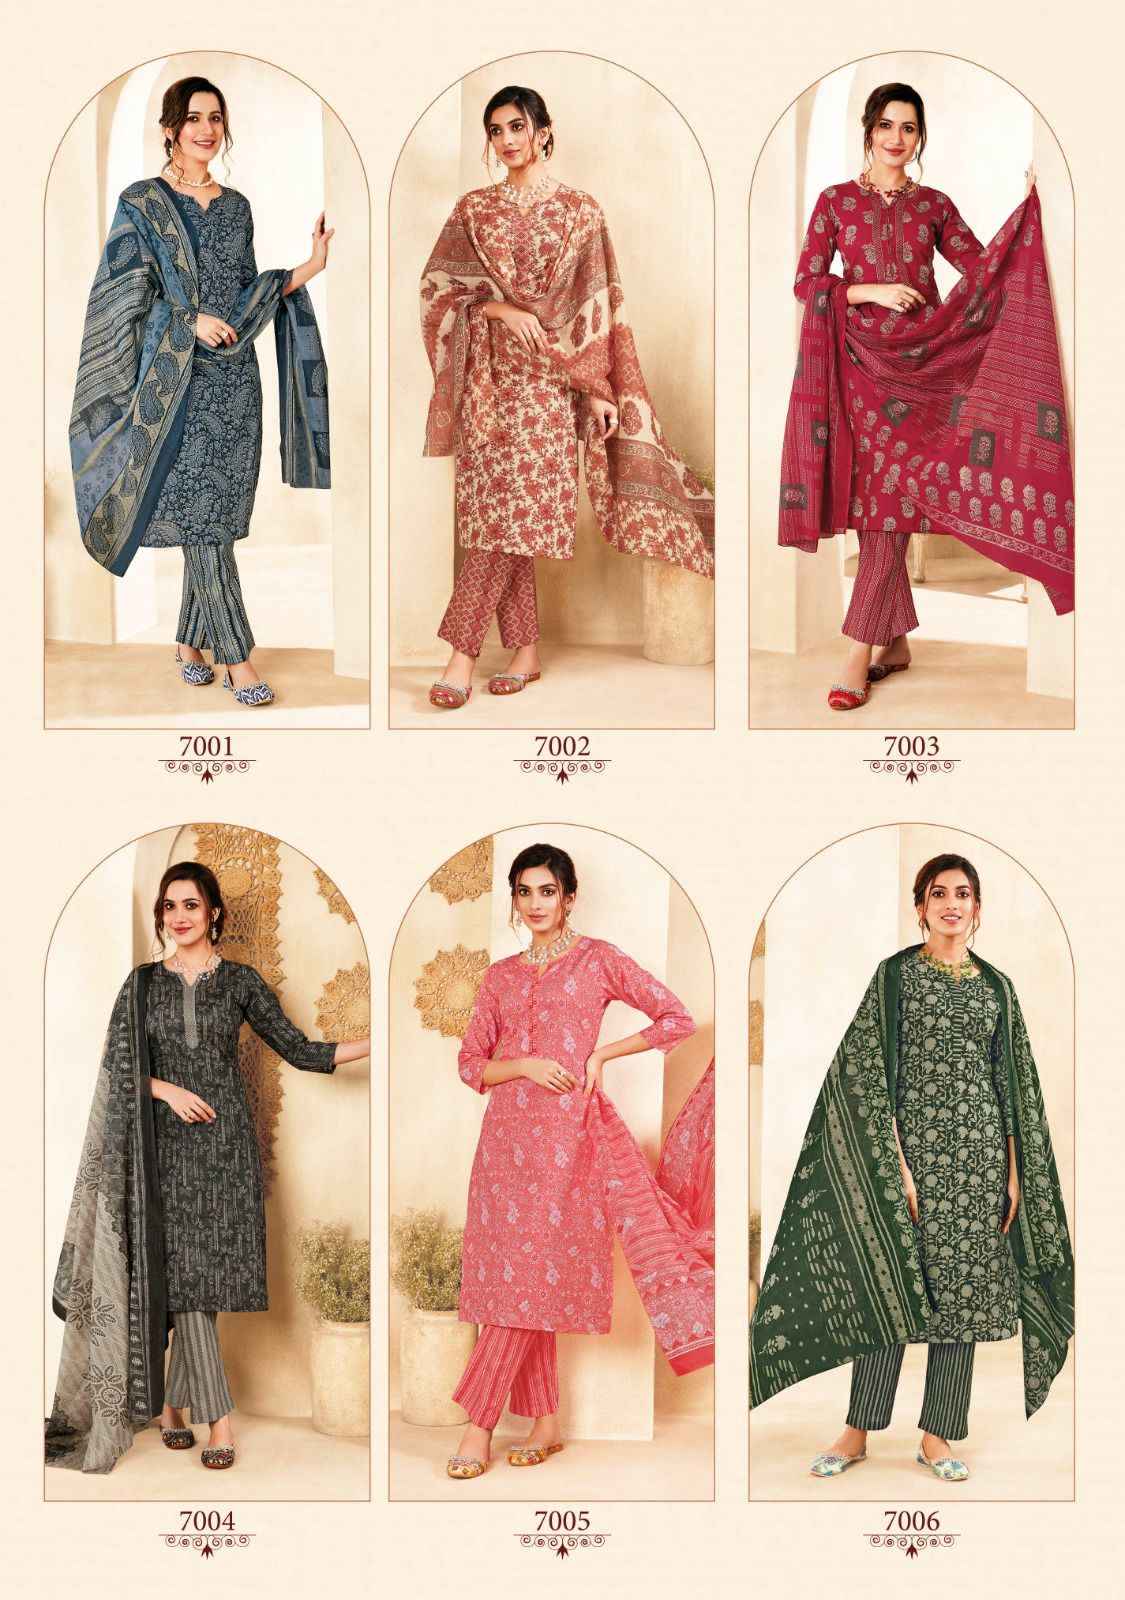 Suryajyoti Preyasi Vol-7 Cambric Cotton Dress Material (10 pc Catalog)